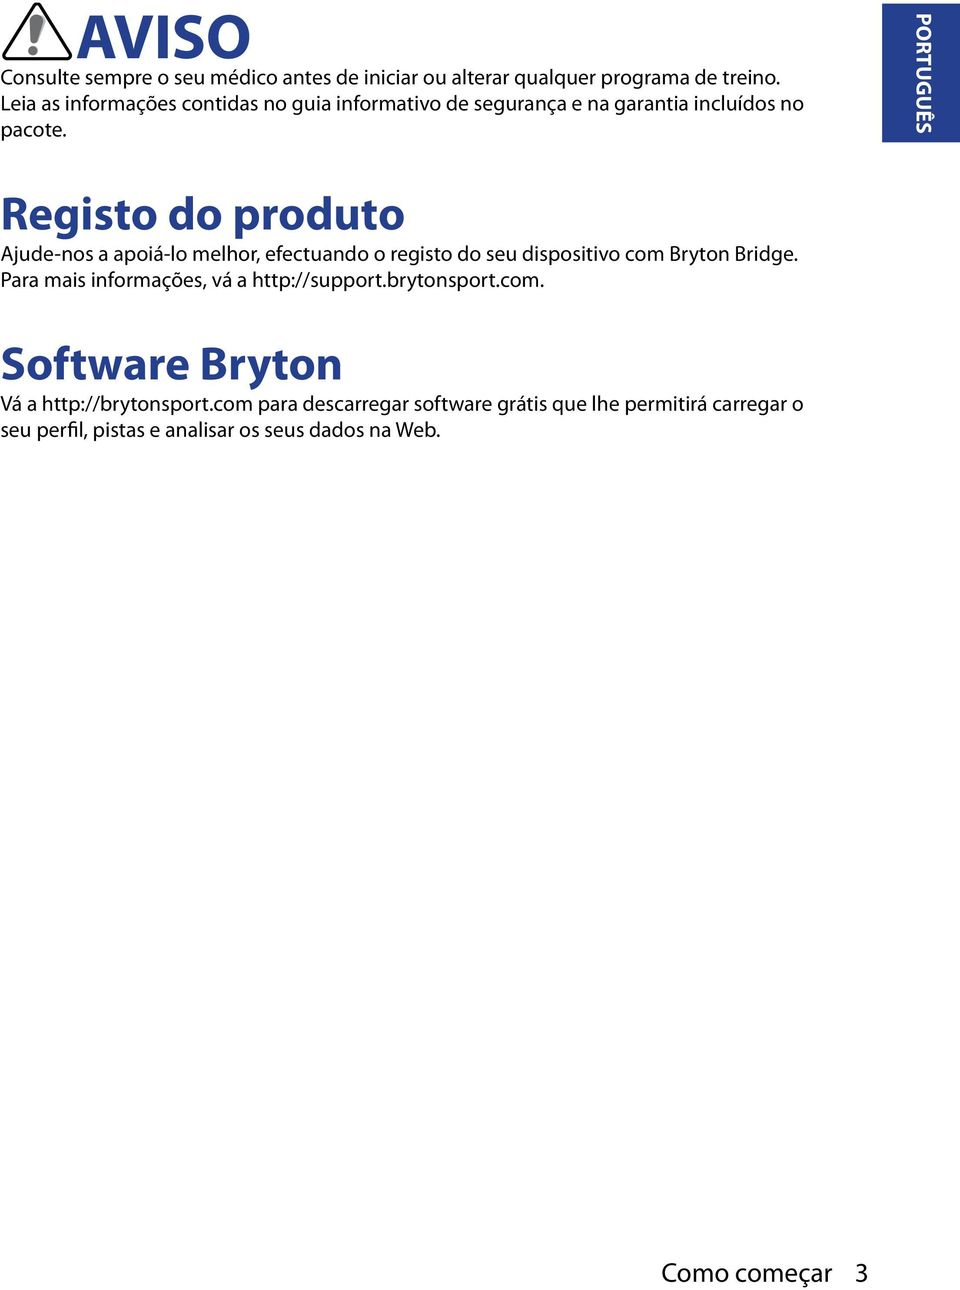 PORTUGUÊS Registo do produto Ajude-nos a apoiá-lo melhor, efectuando o registo do seu dispositivo com Bryton Bridge.